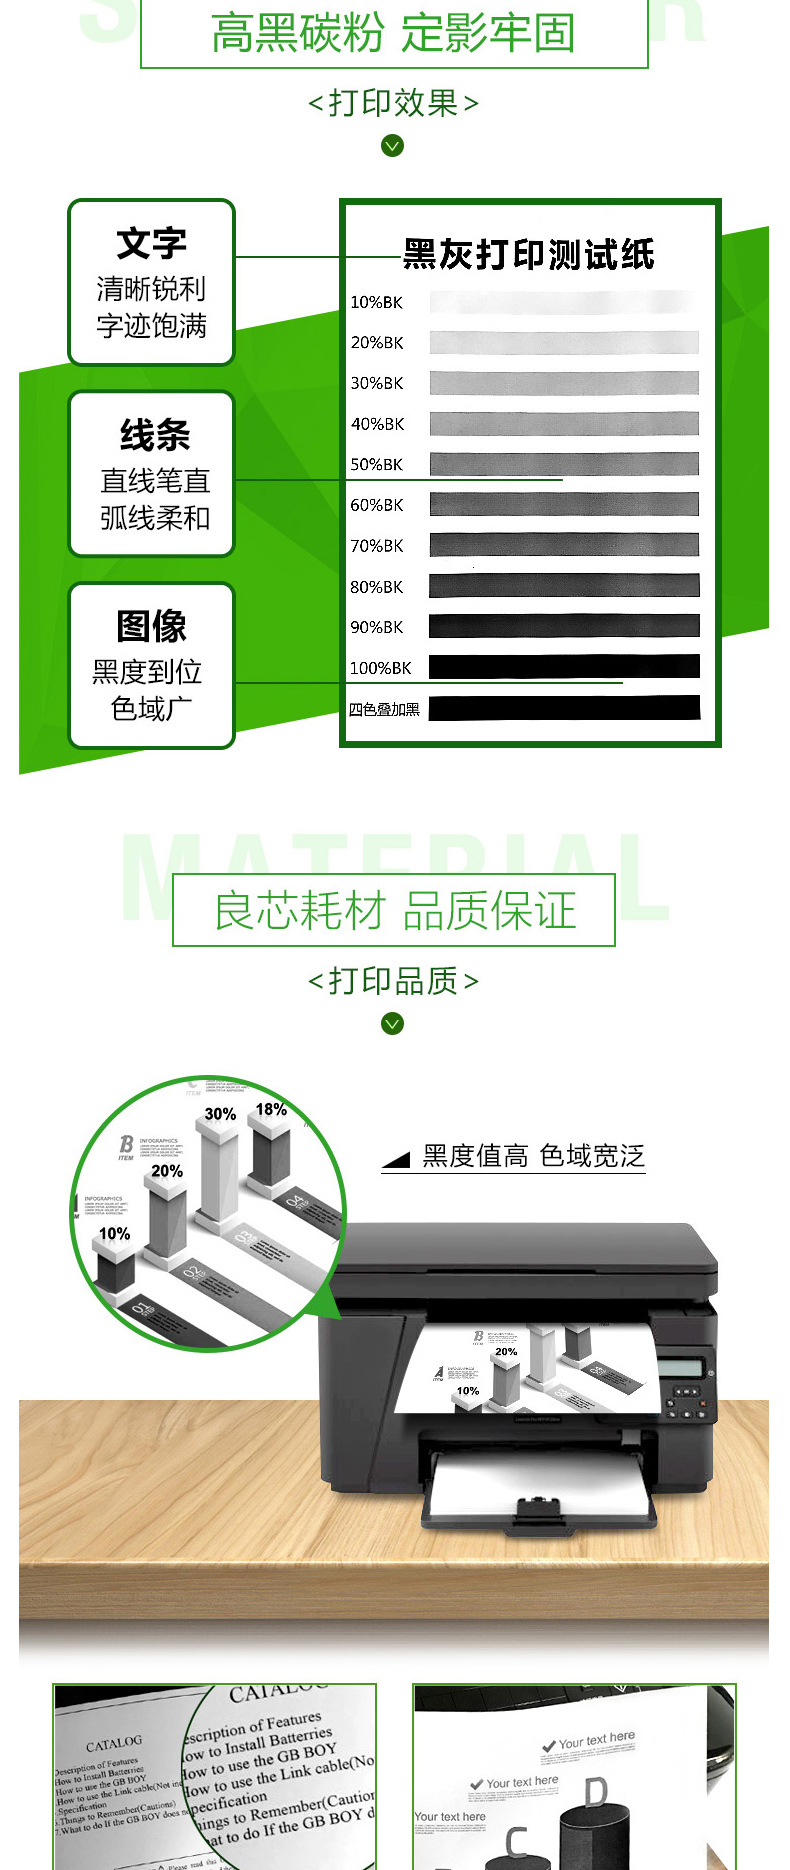 耐力 NIKO 碳粉 CF230X (黑色) 易加粉大容量粉盒带芯片(适用于惠普/HP)